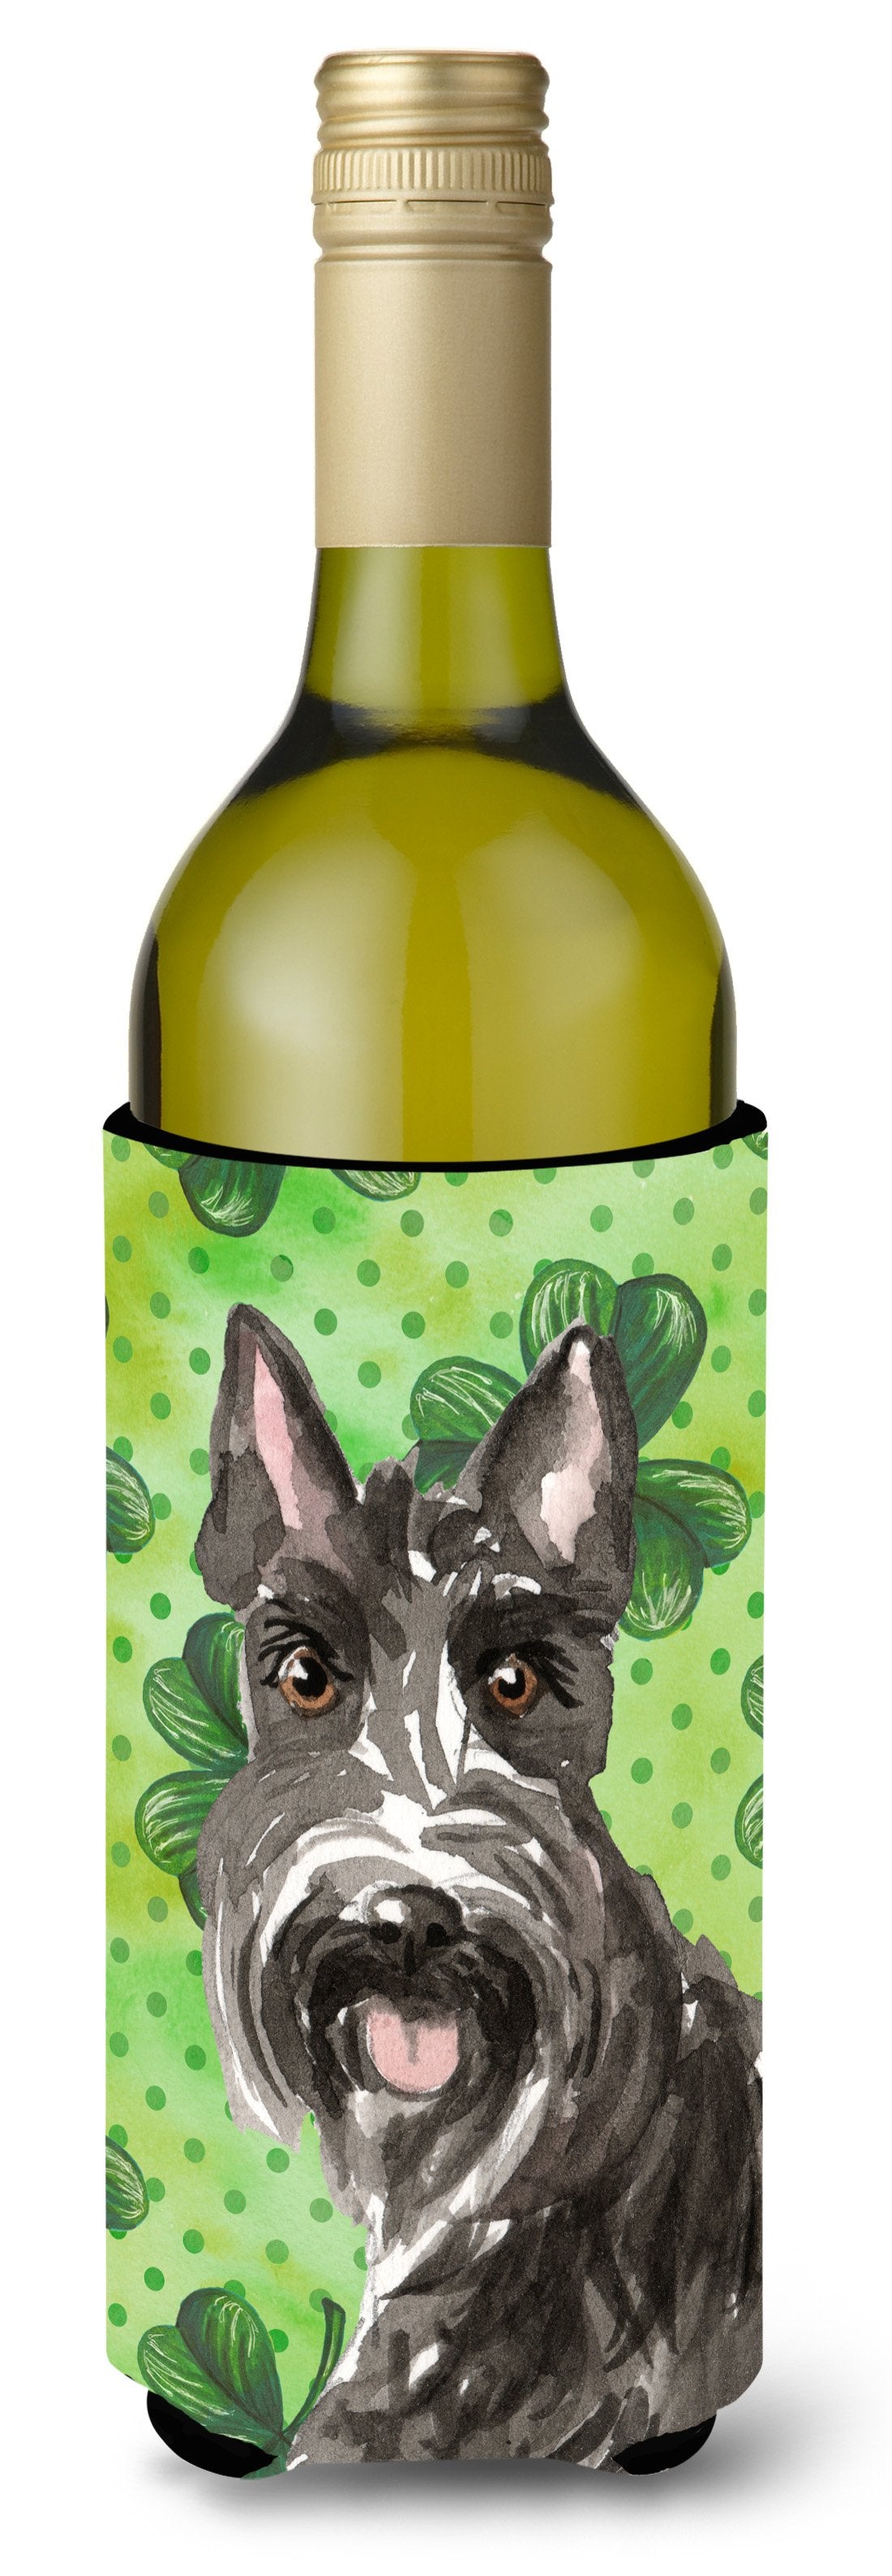 Shamrocks Scottish Terrier Wine Bottle Beverge Insulator Hugger CK1791LITERK by Caroline's Treasures